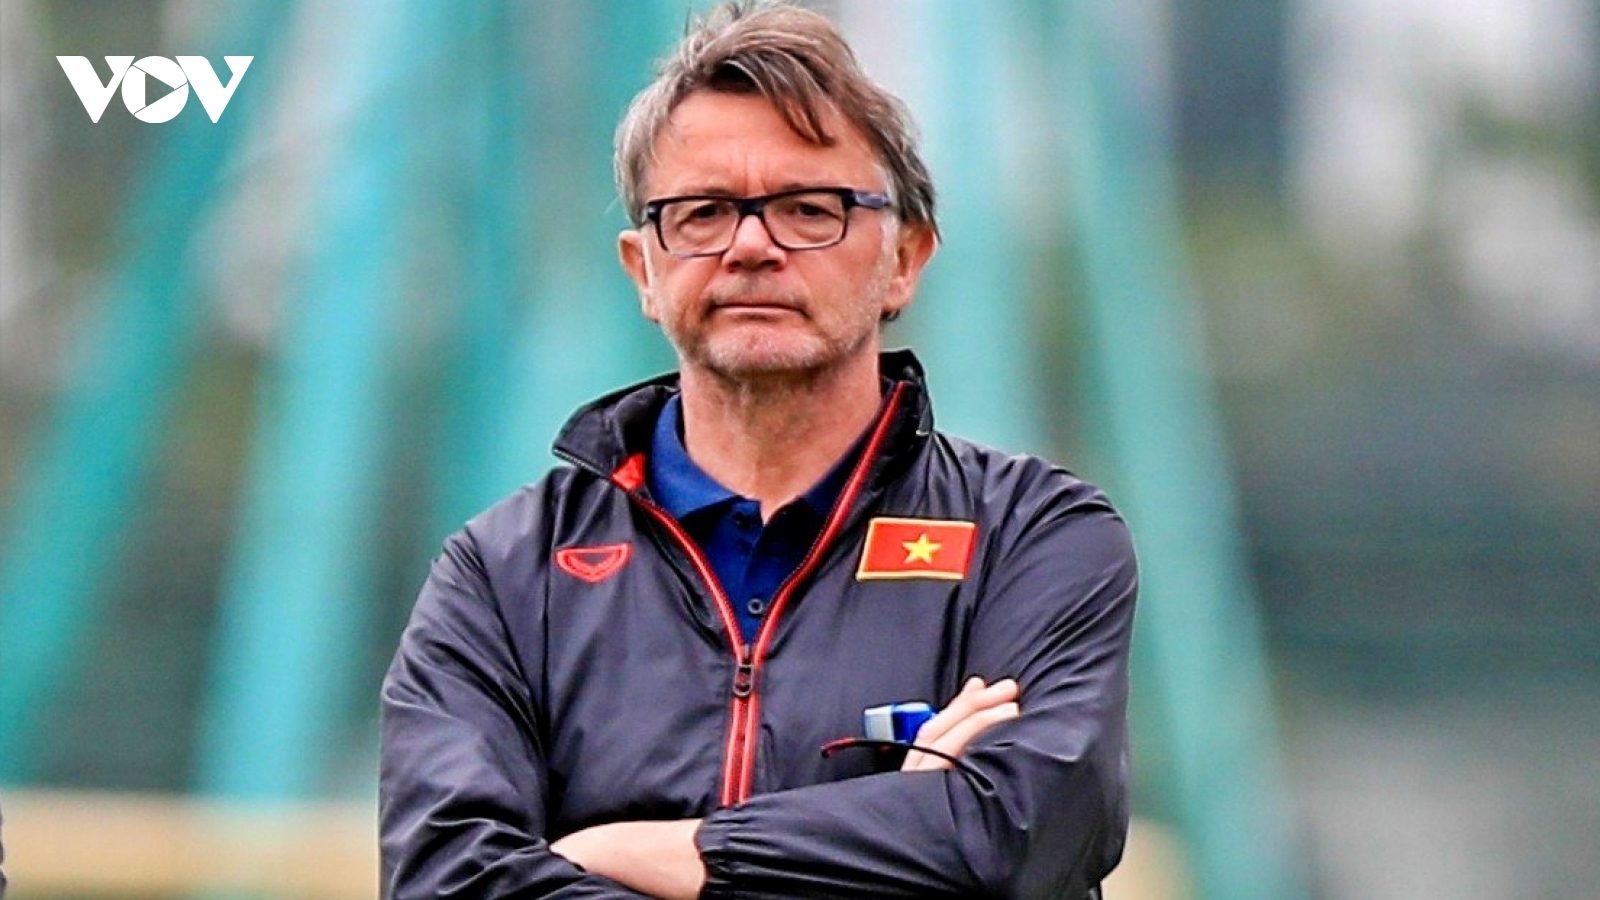 HLV Philippe Troussier bất ngờ tuyển thêm quân cho U23 Việt Nam